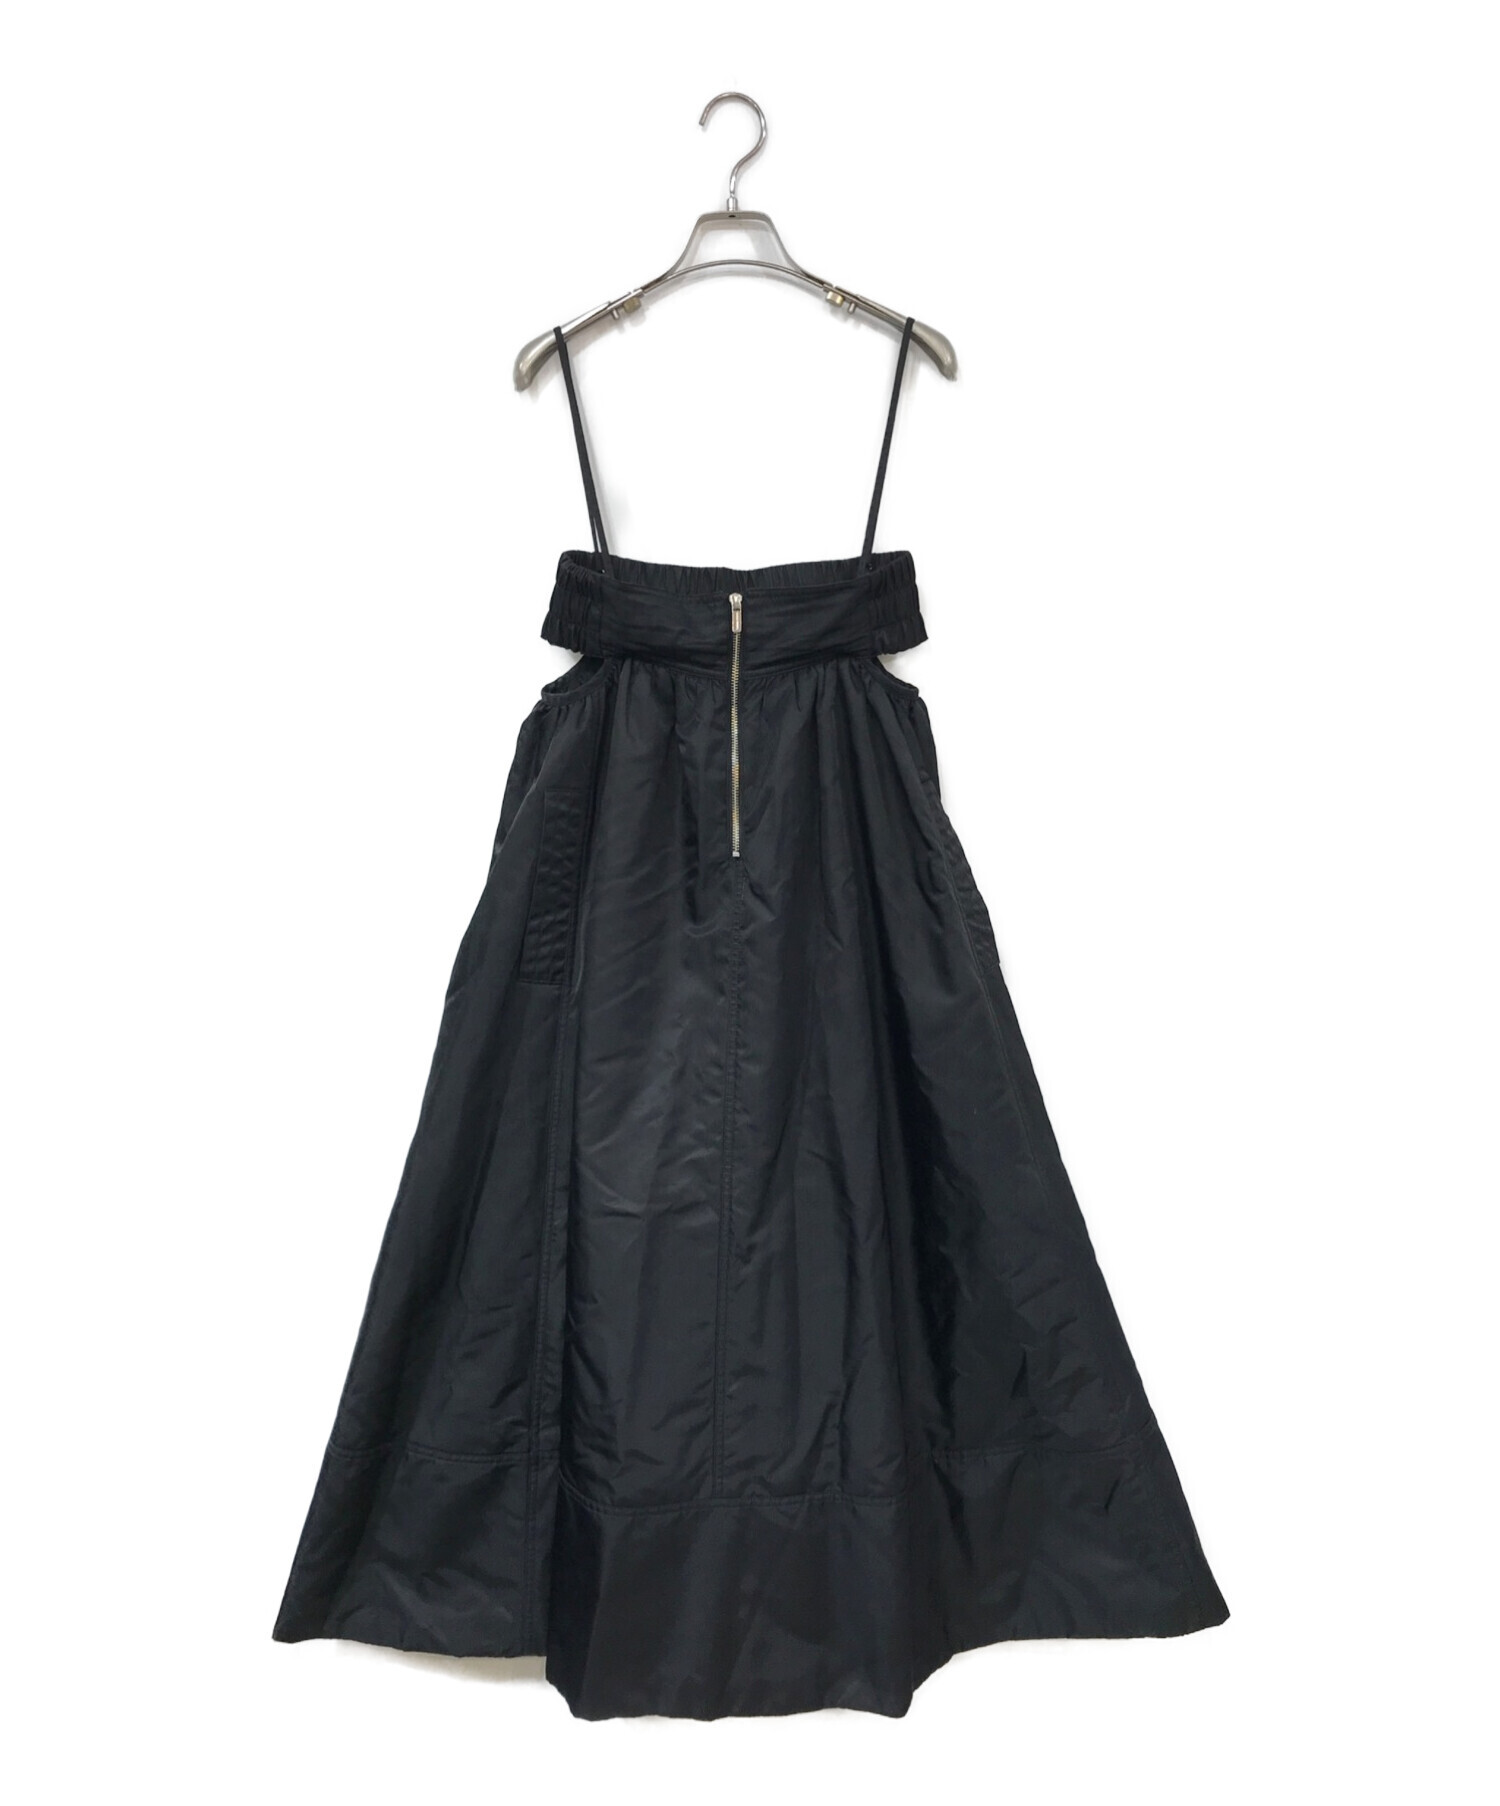 MAISON SPECIAL (メゾンスペシャル) 2way Puffer Flare Skirt ブラック サイズ:FREE